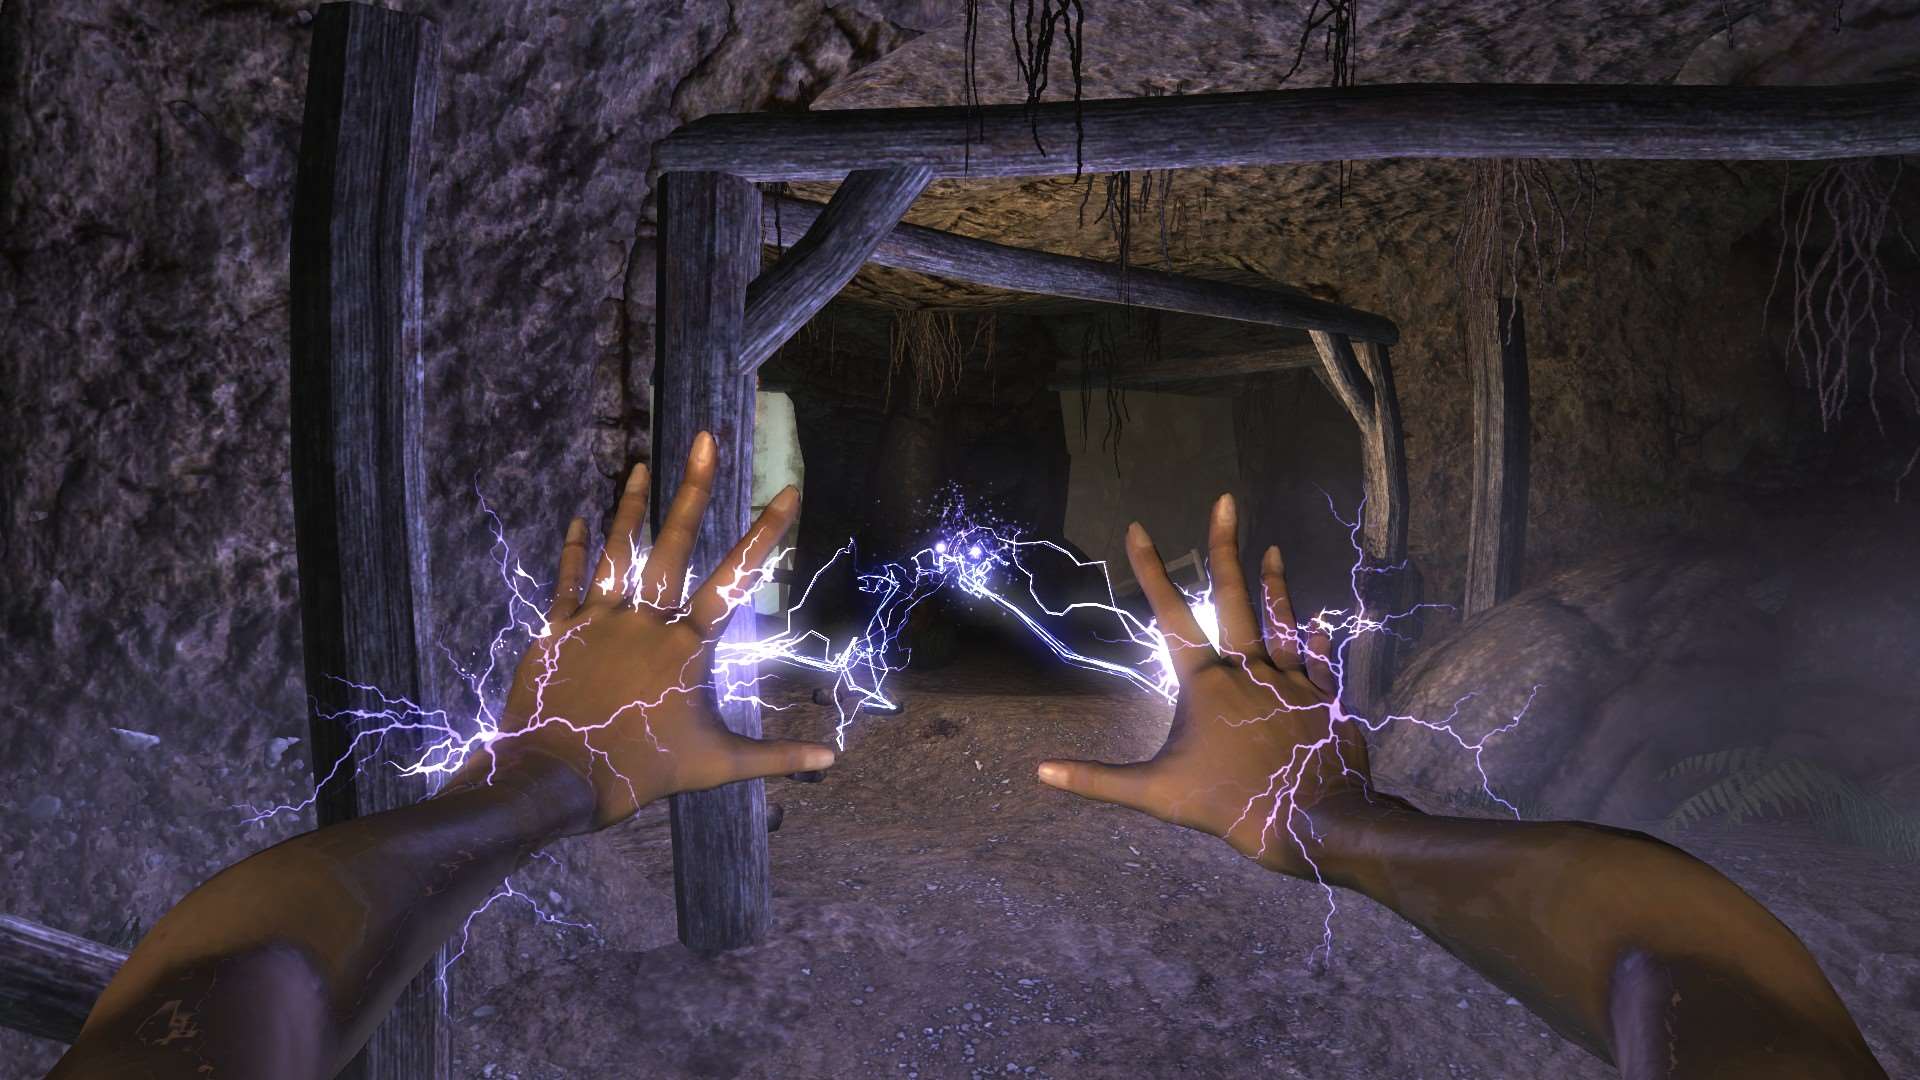 Электричество в Скайриме есть только в виде магических умений, так что можн...